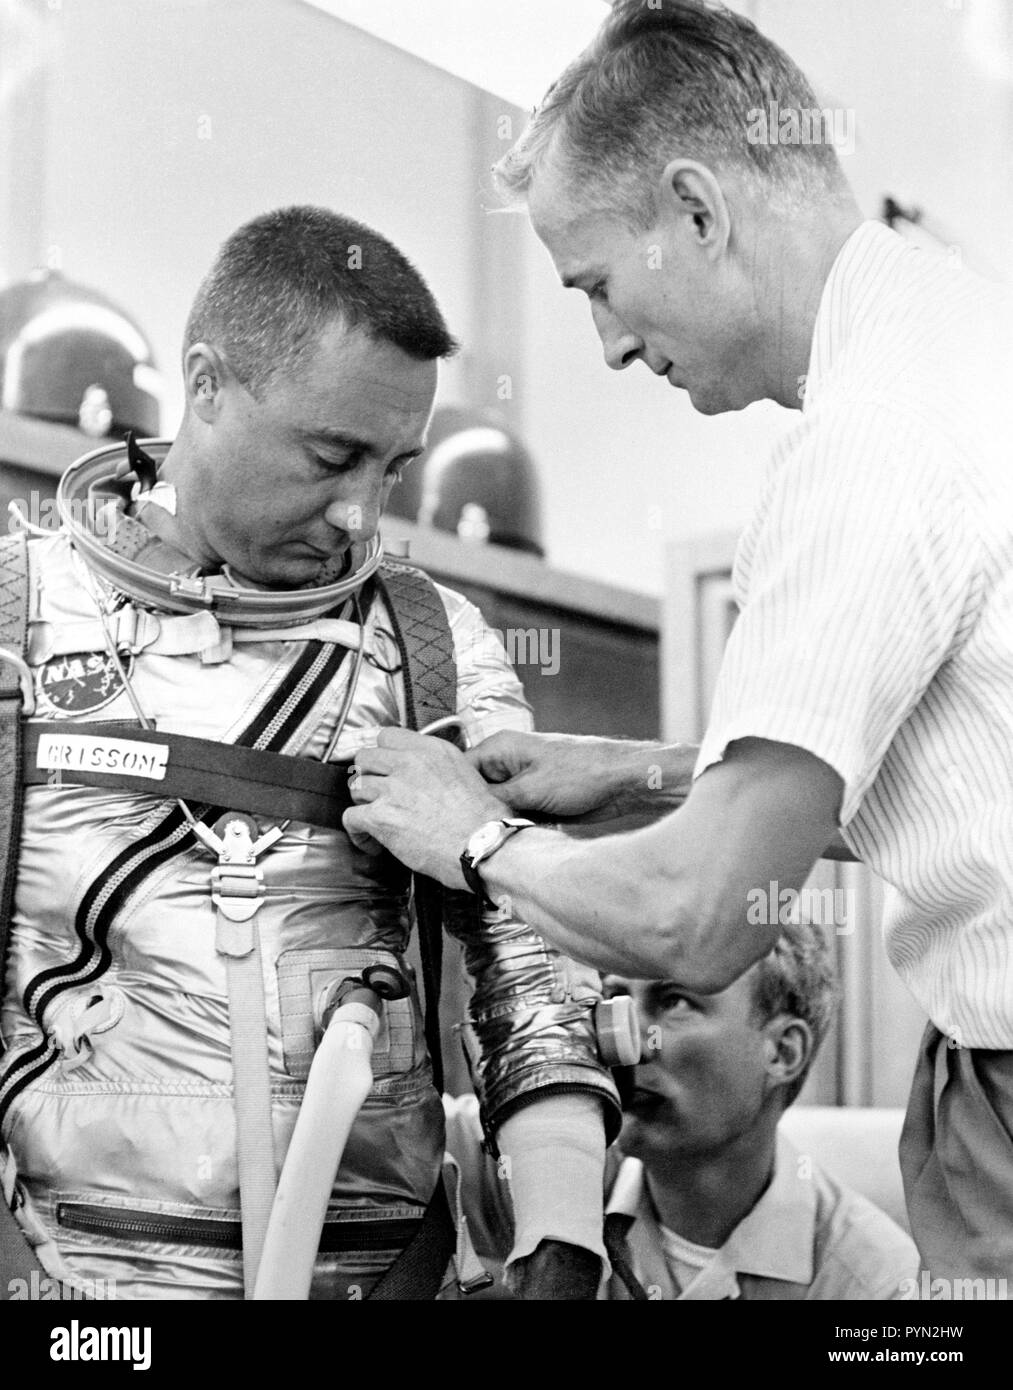 (1961) - - - Astronaut Virgil I. (GUS) Grissom, Pilot der Mercury-Redstone 4 (MR-4) Raumfahrt, Anzüge für MR-4 Simulation Training. Die Unterstützung ist für Techniker Joe Schmitt. Stockfoto